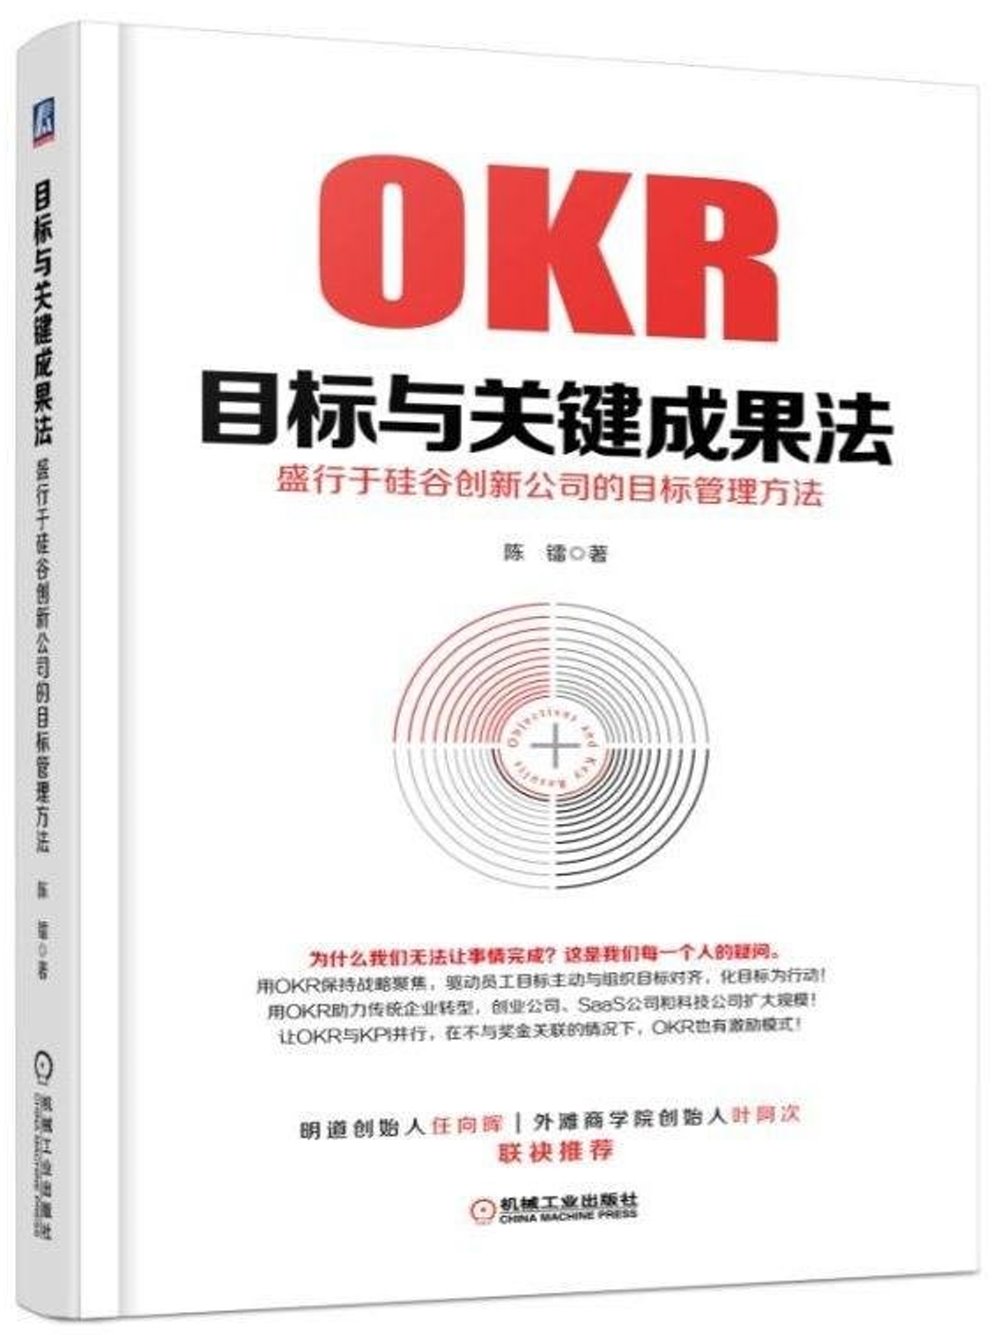 OKR目標與關鍵成果法：盛行於矽谷創新公司的目標管理方法